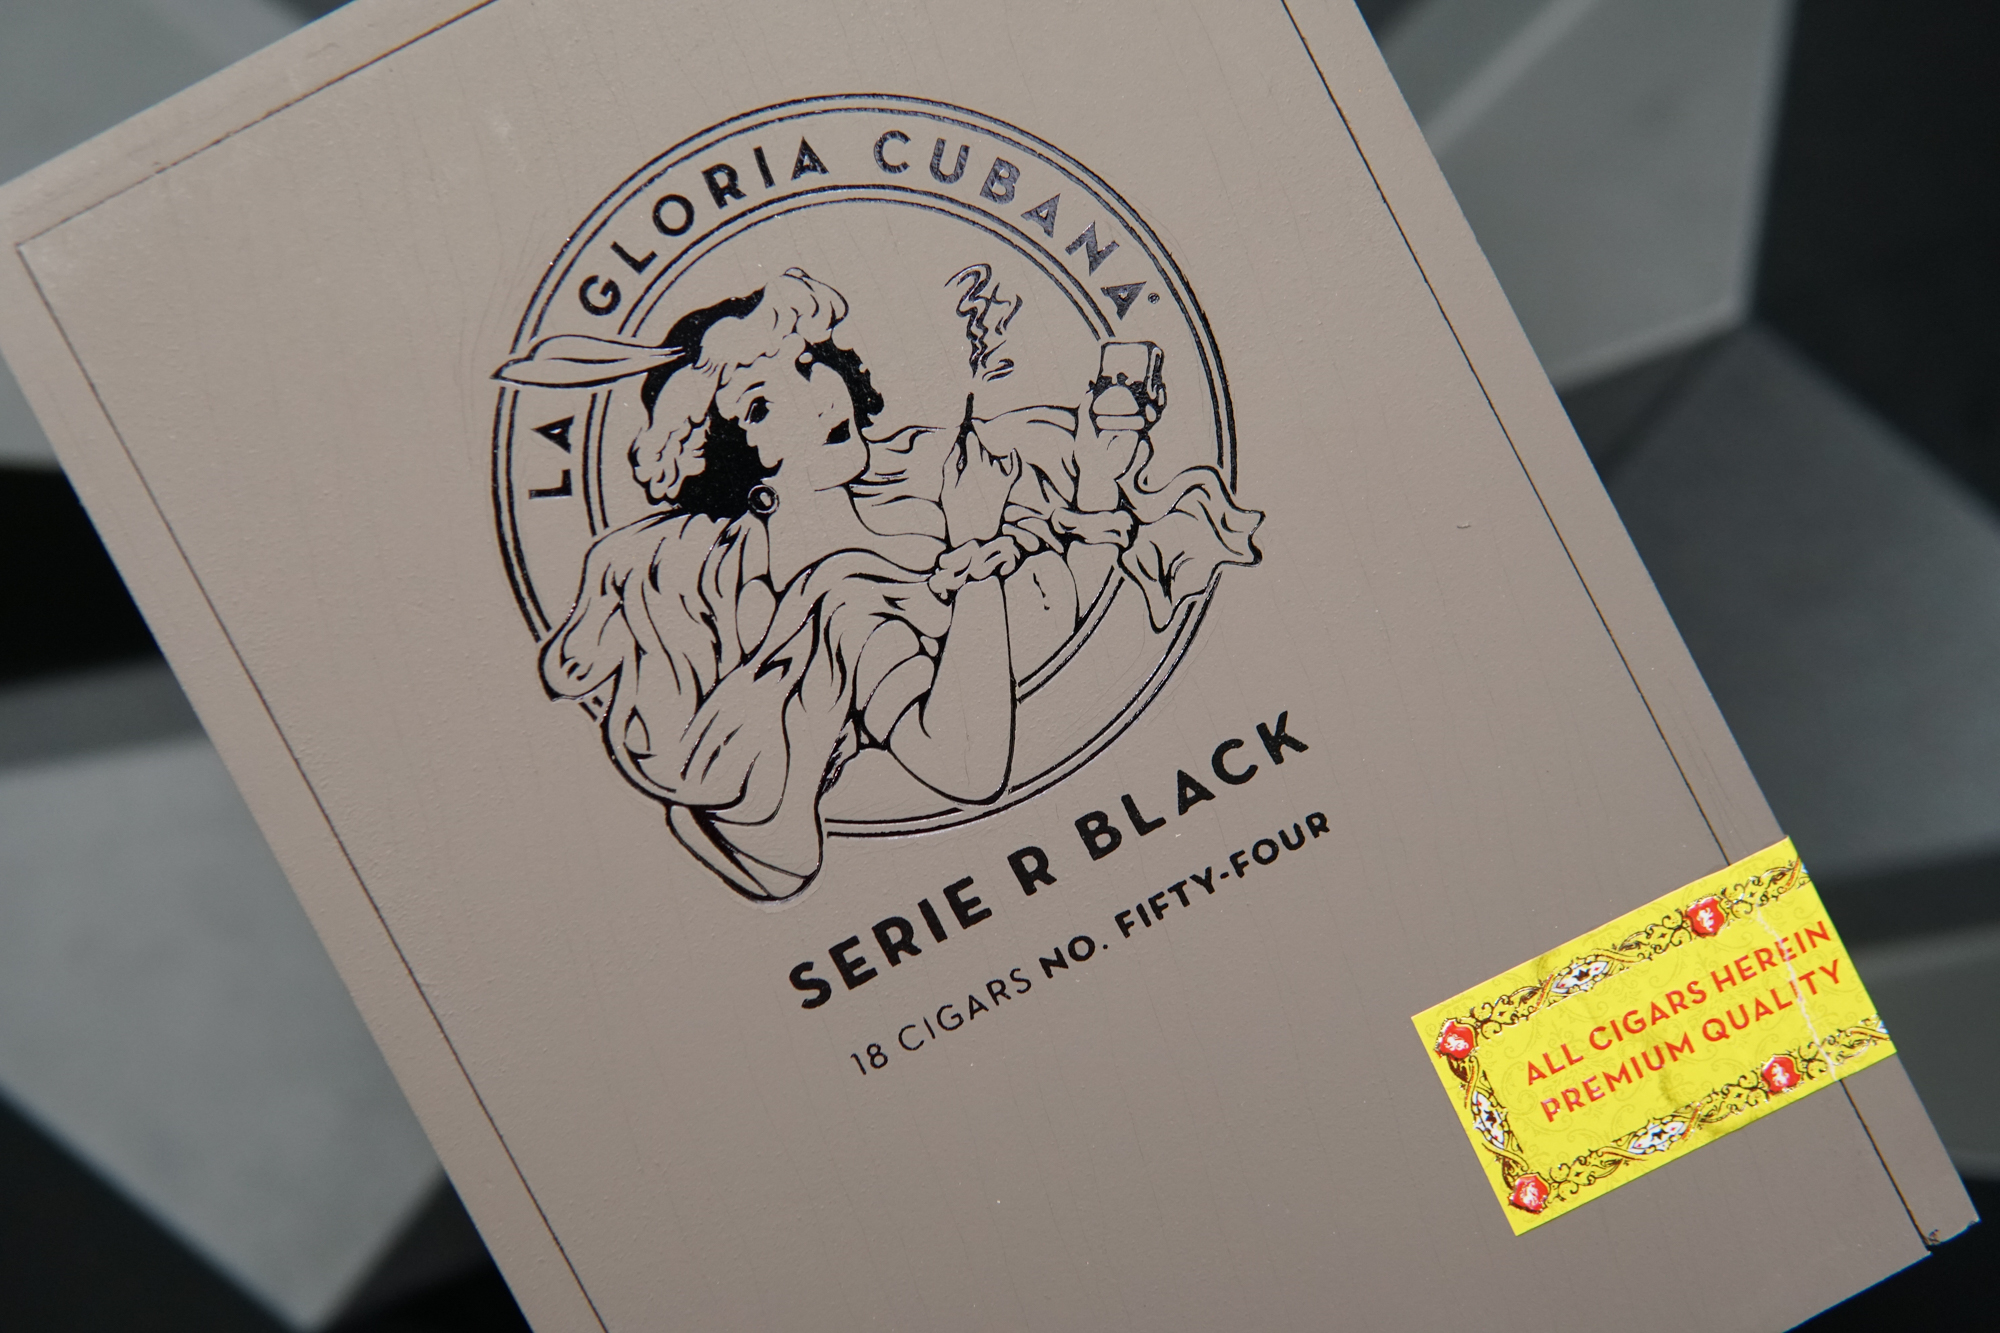 LA GLORIA CUBANA EMPTY WOOD CIGAR BOX SERIE R BLACK~NO. 54